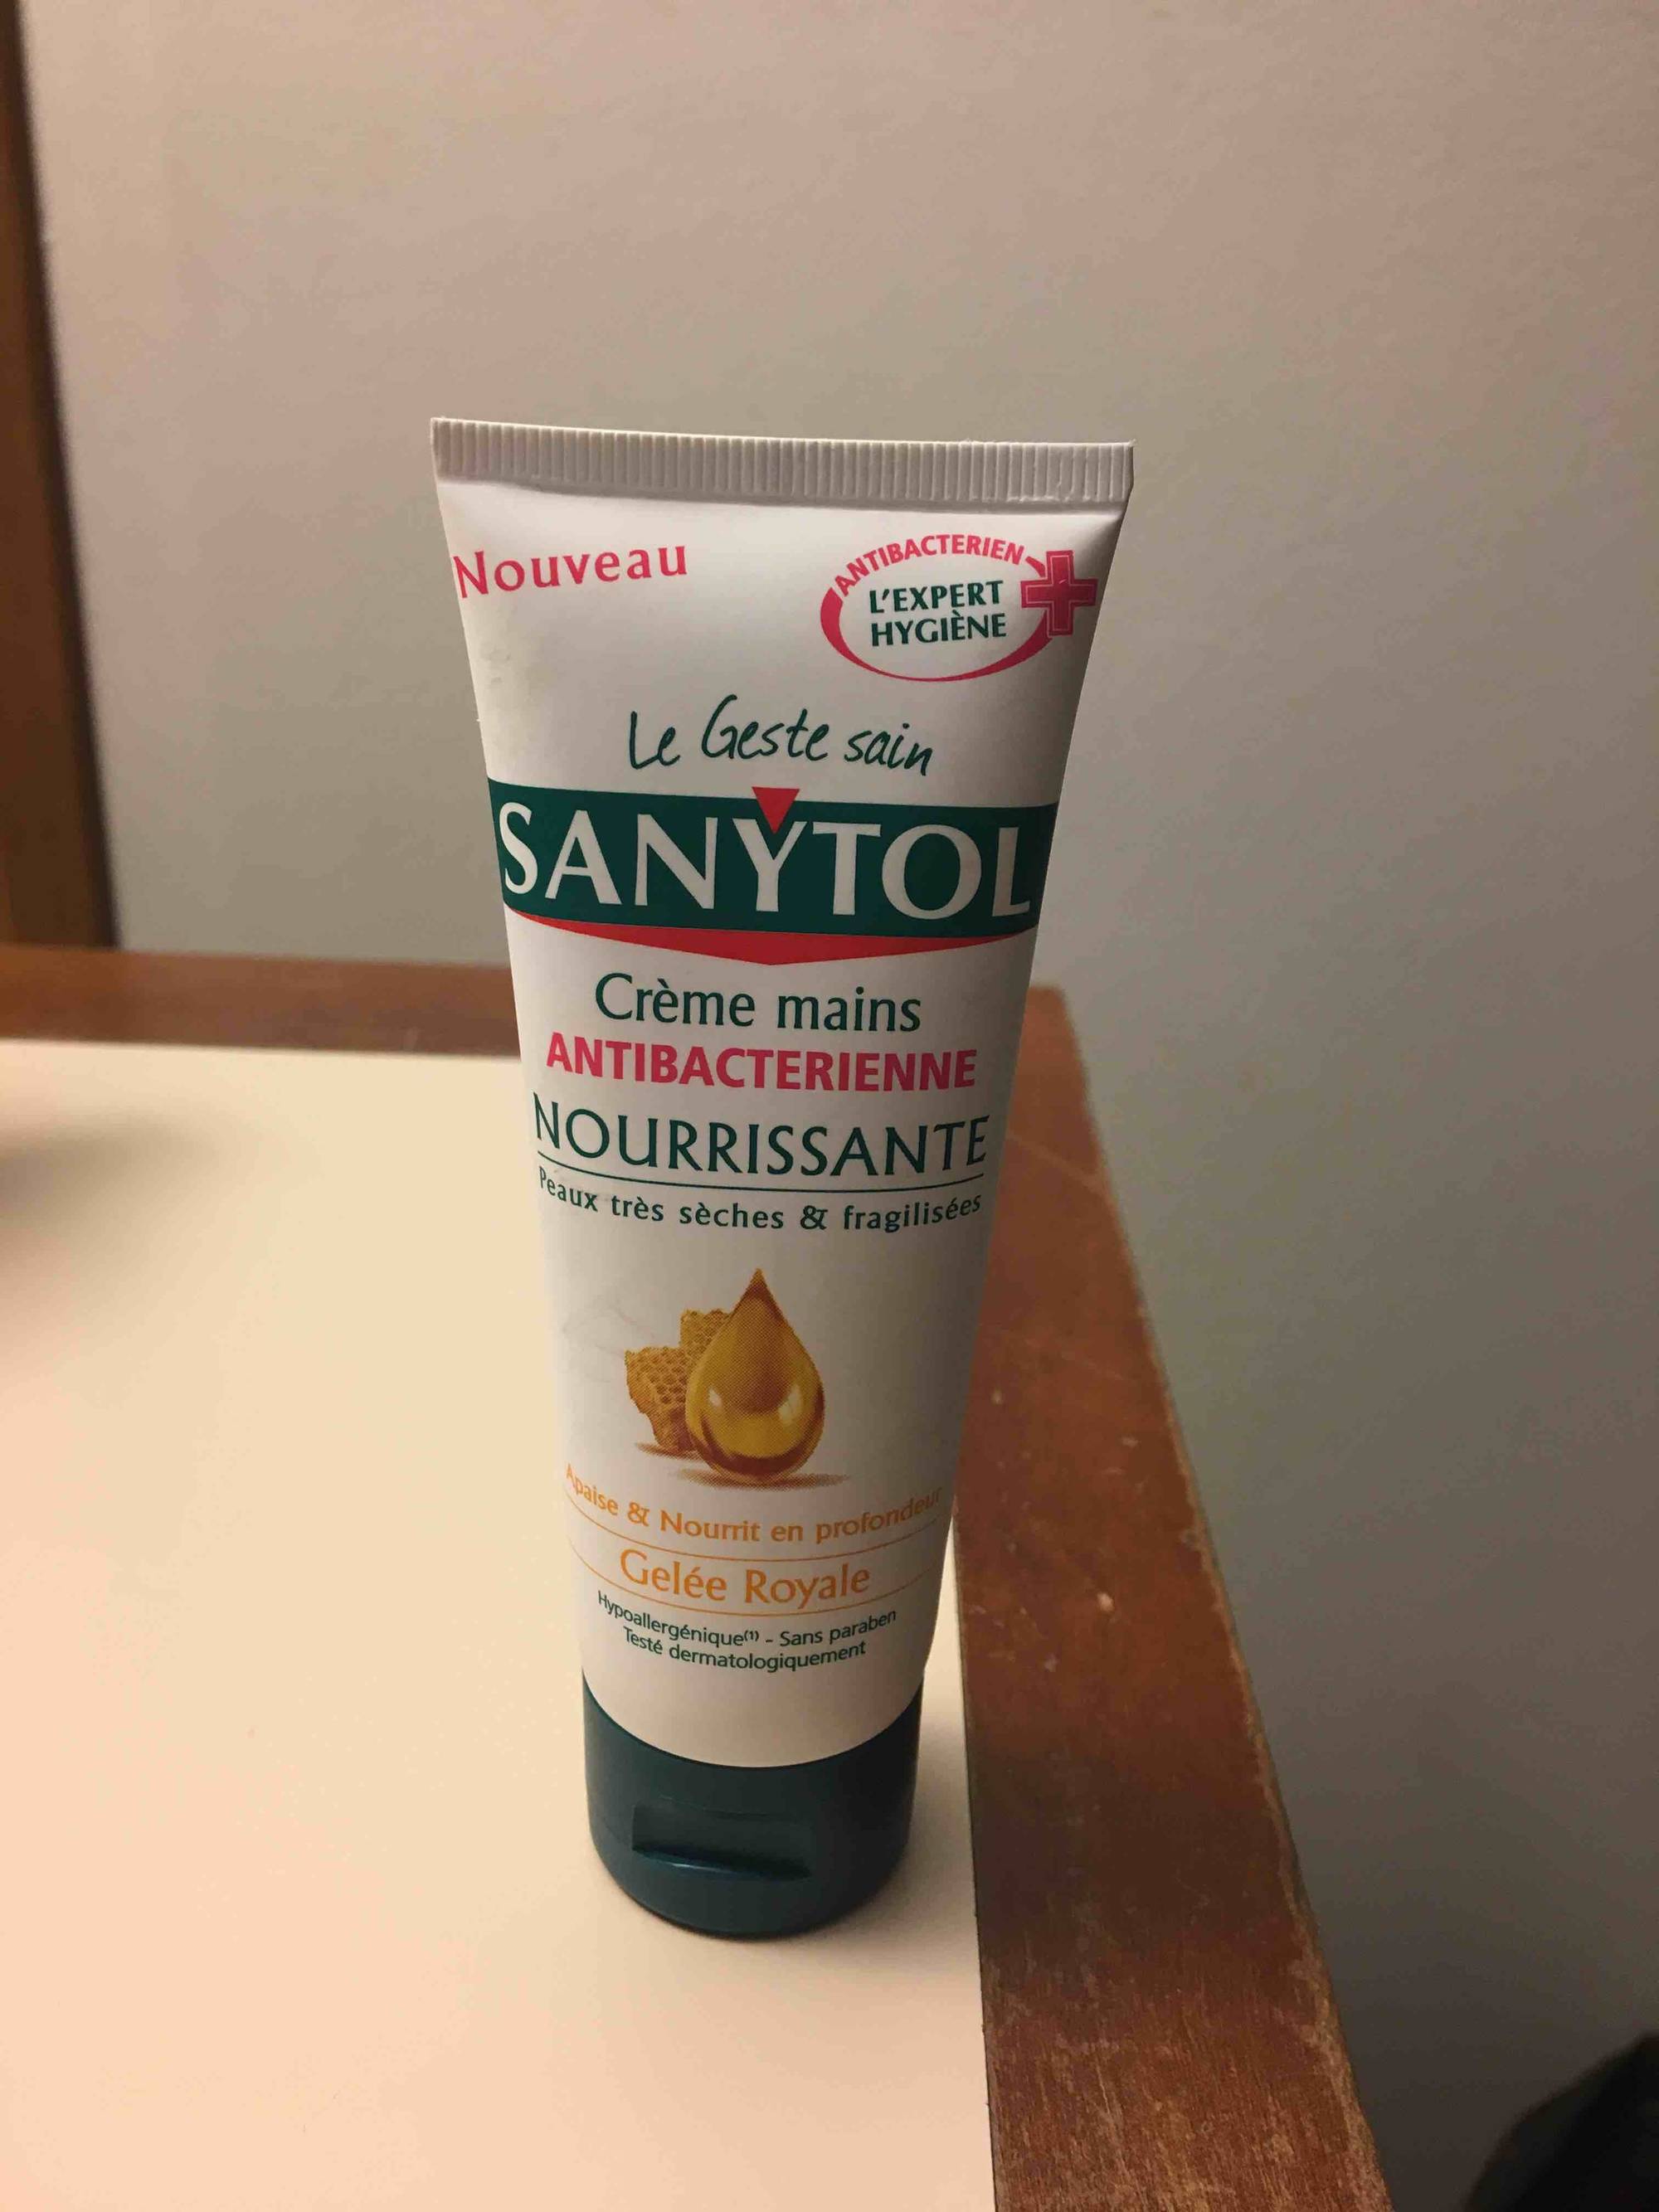 SANYTOL - Crème mains antibactérienne nourrissante - Gelée royale